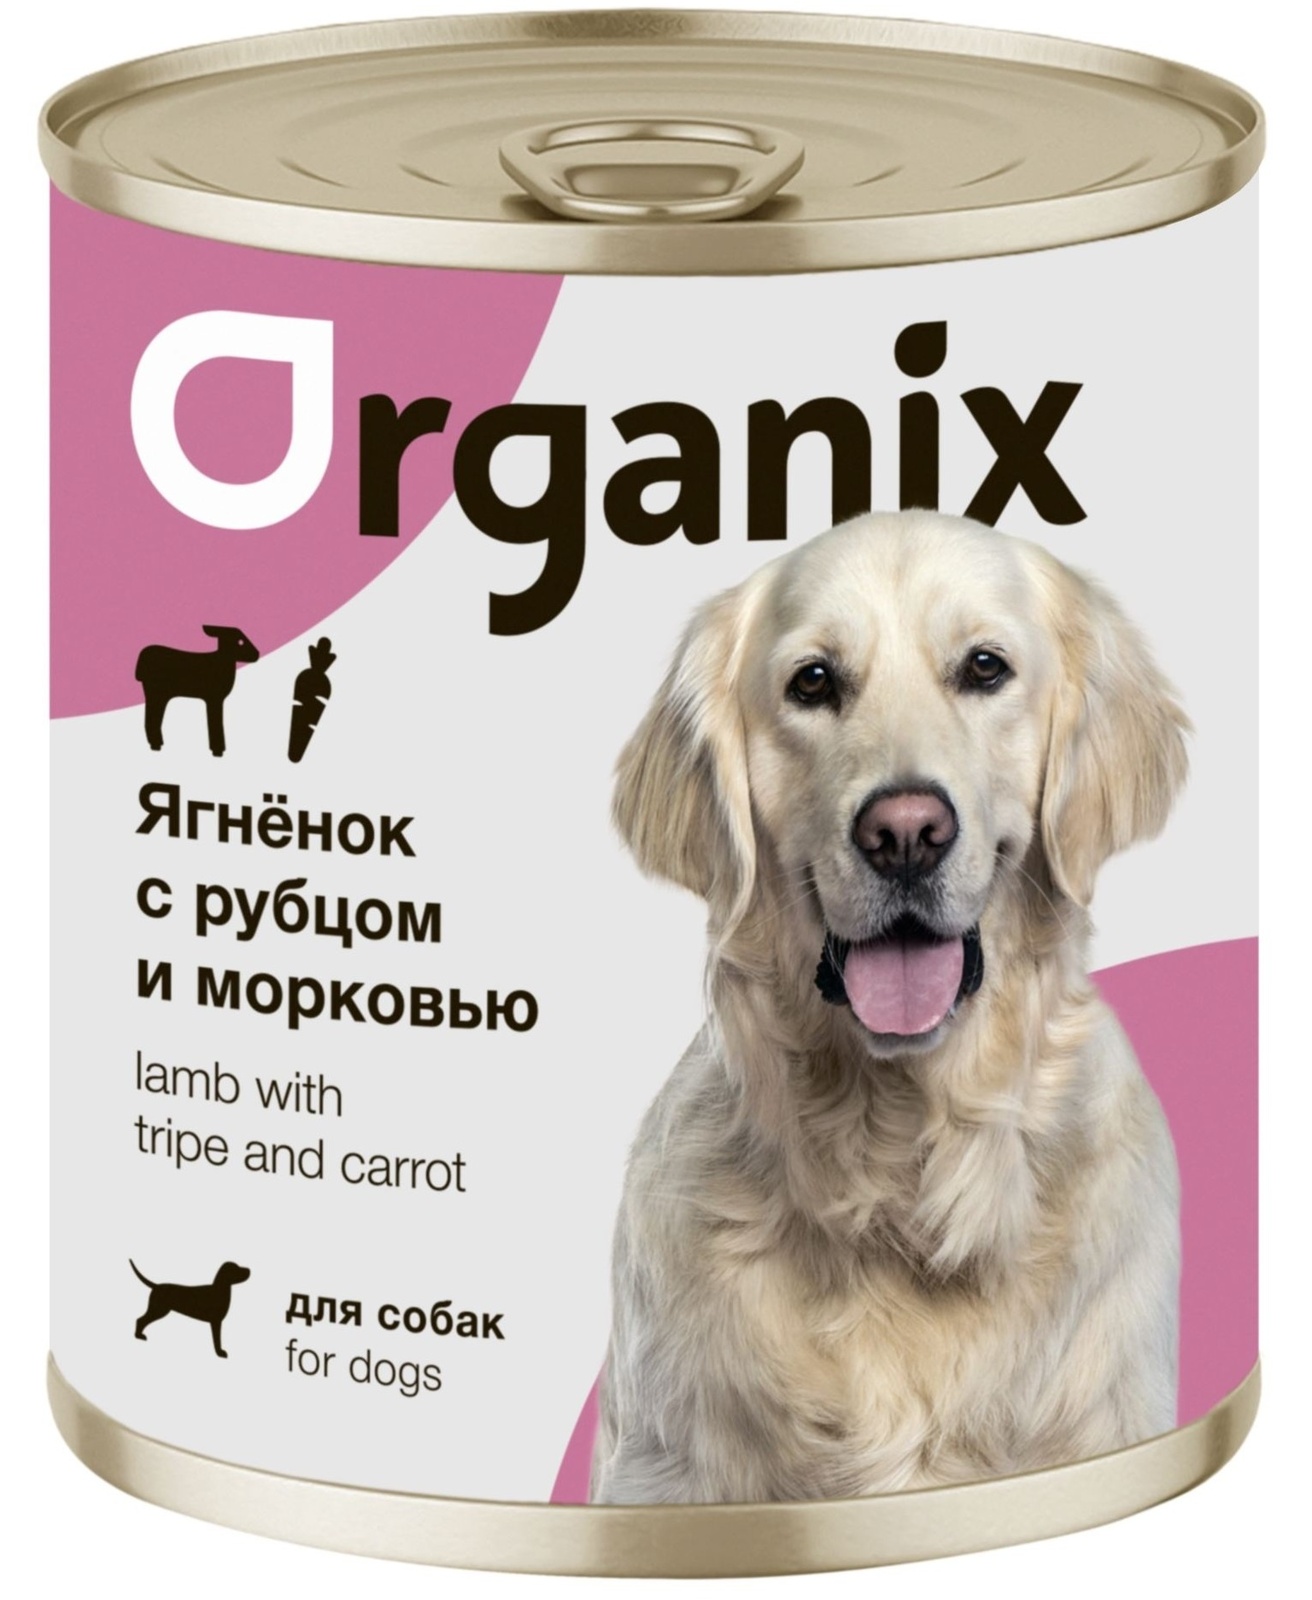 Organix консервы Organix консервы для собак Ягненок с рубцом и морковью (750 г) organix консервы organix консервы для собак телятина с зеленой фасолью 750 г